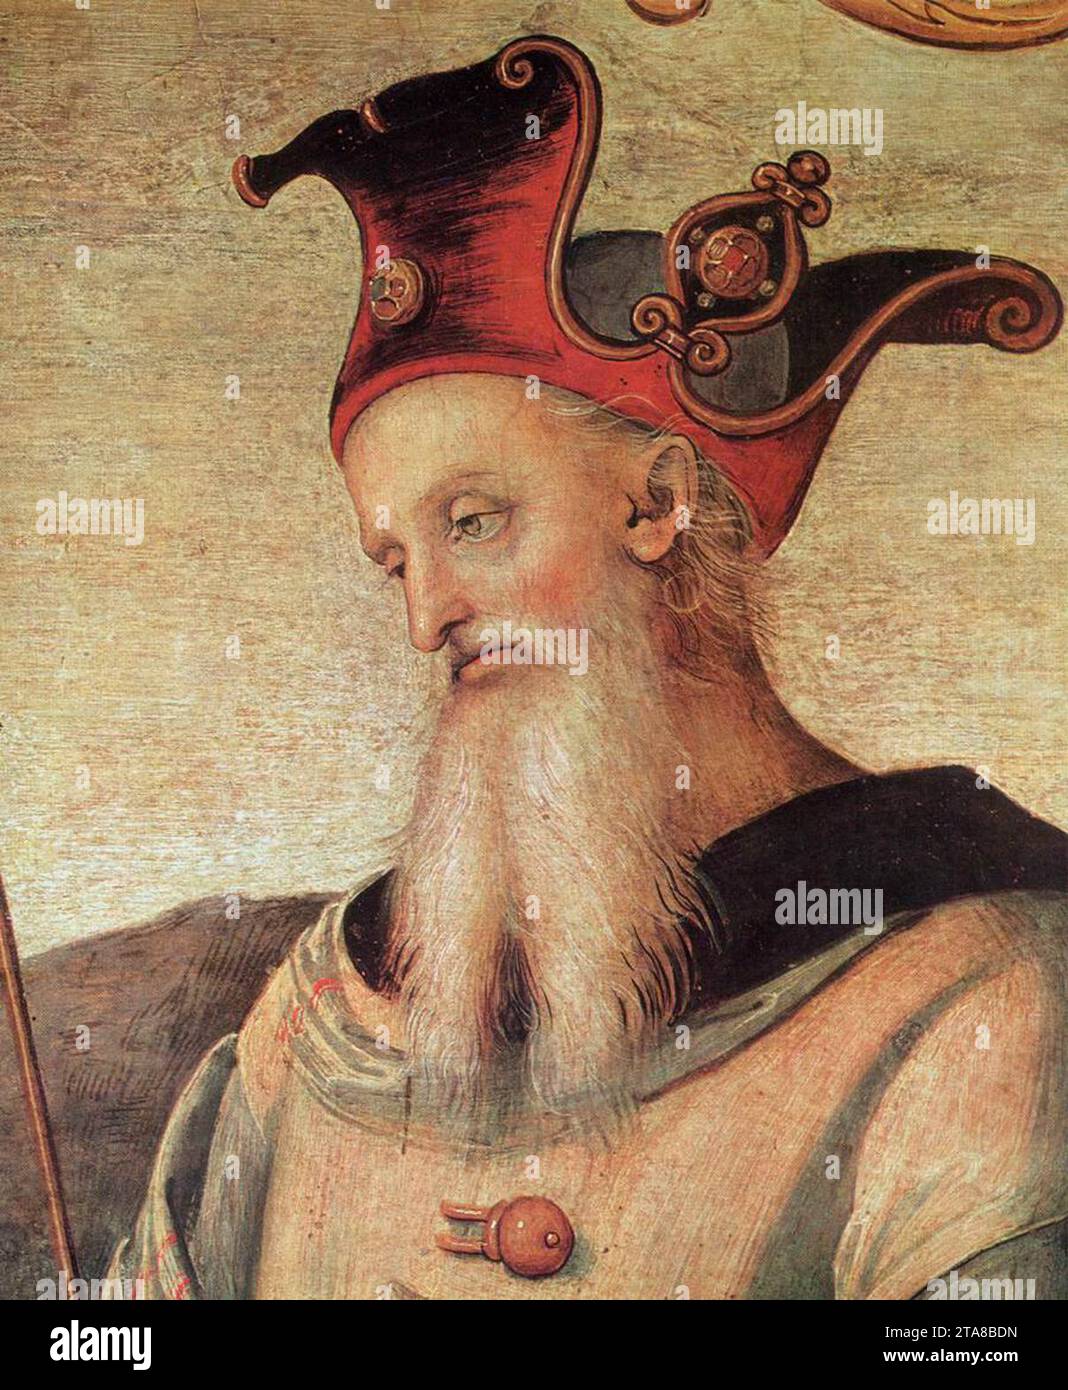 Hommes célèbres de l'Antiquité (détail) 1497-1500 de Pietro Perugino Banque D'Images